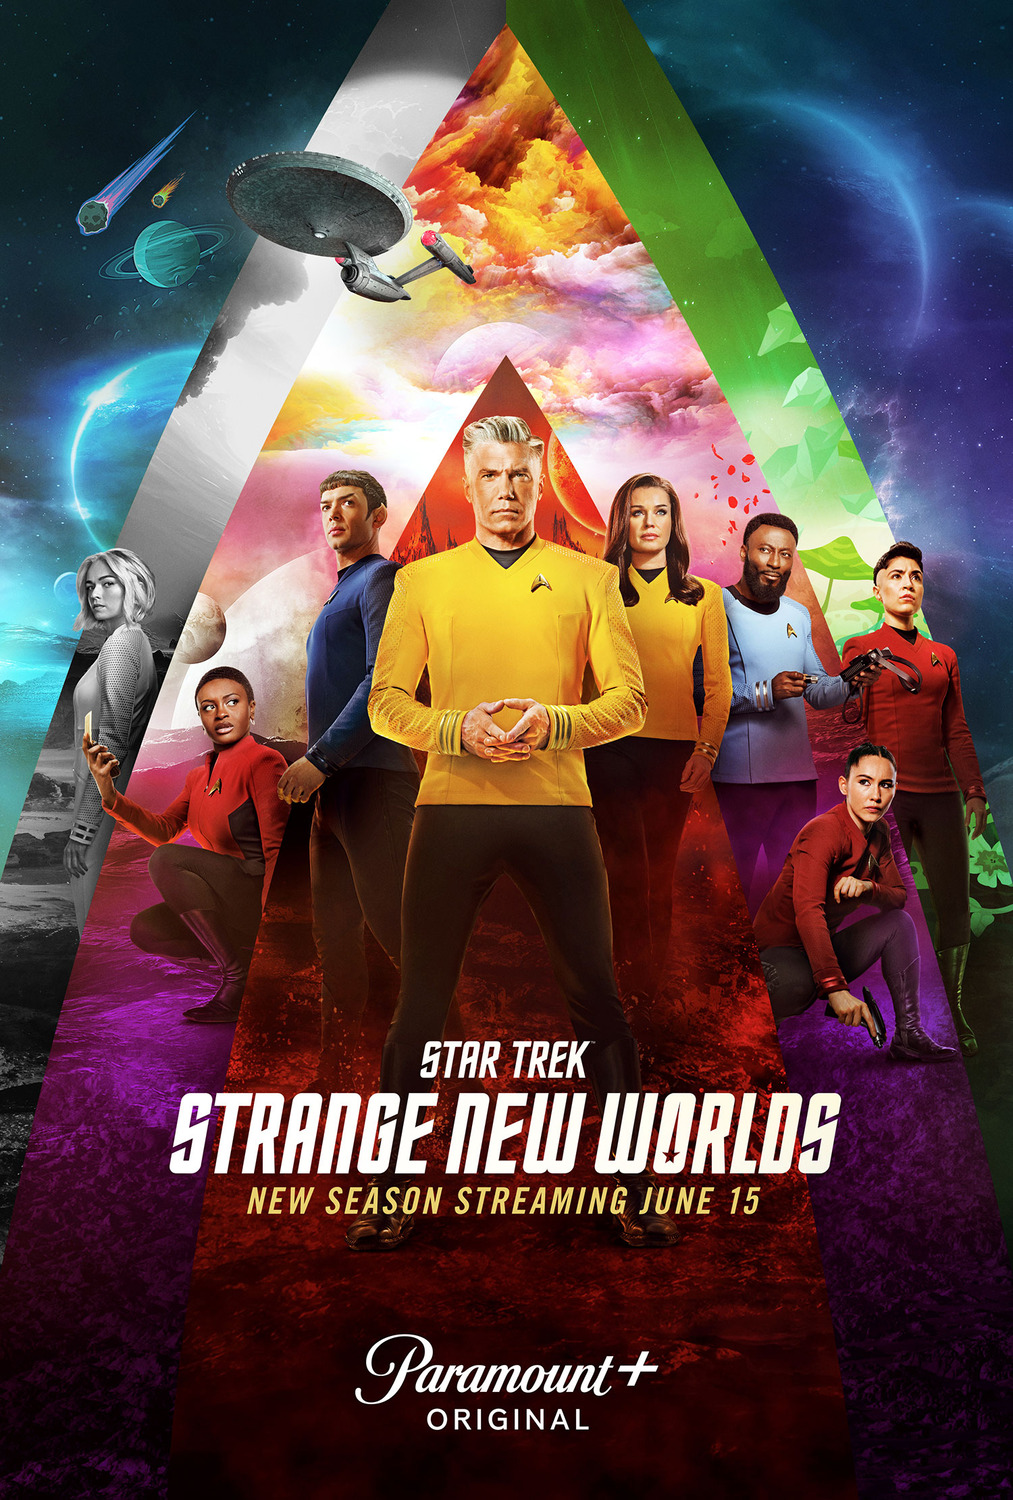 Extra Large TV Poster Image for Star Trek: Strange New Worlds (#21 of 22)